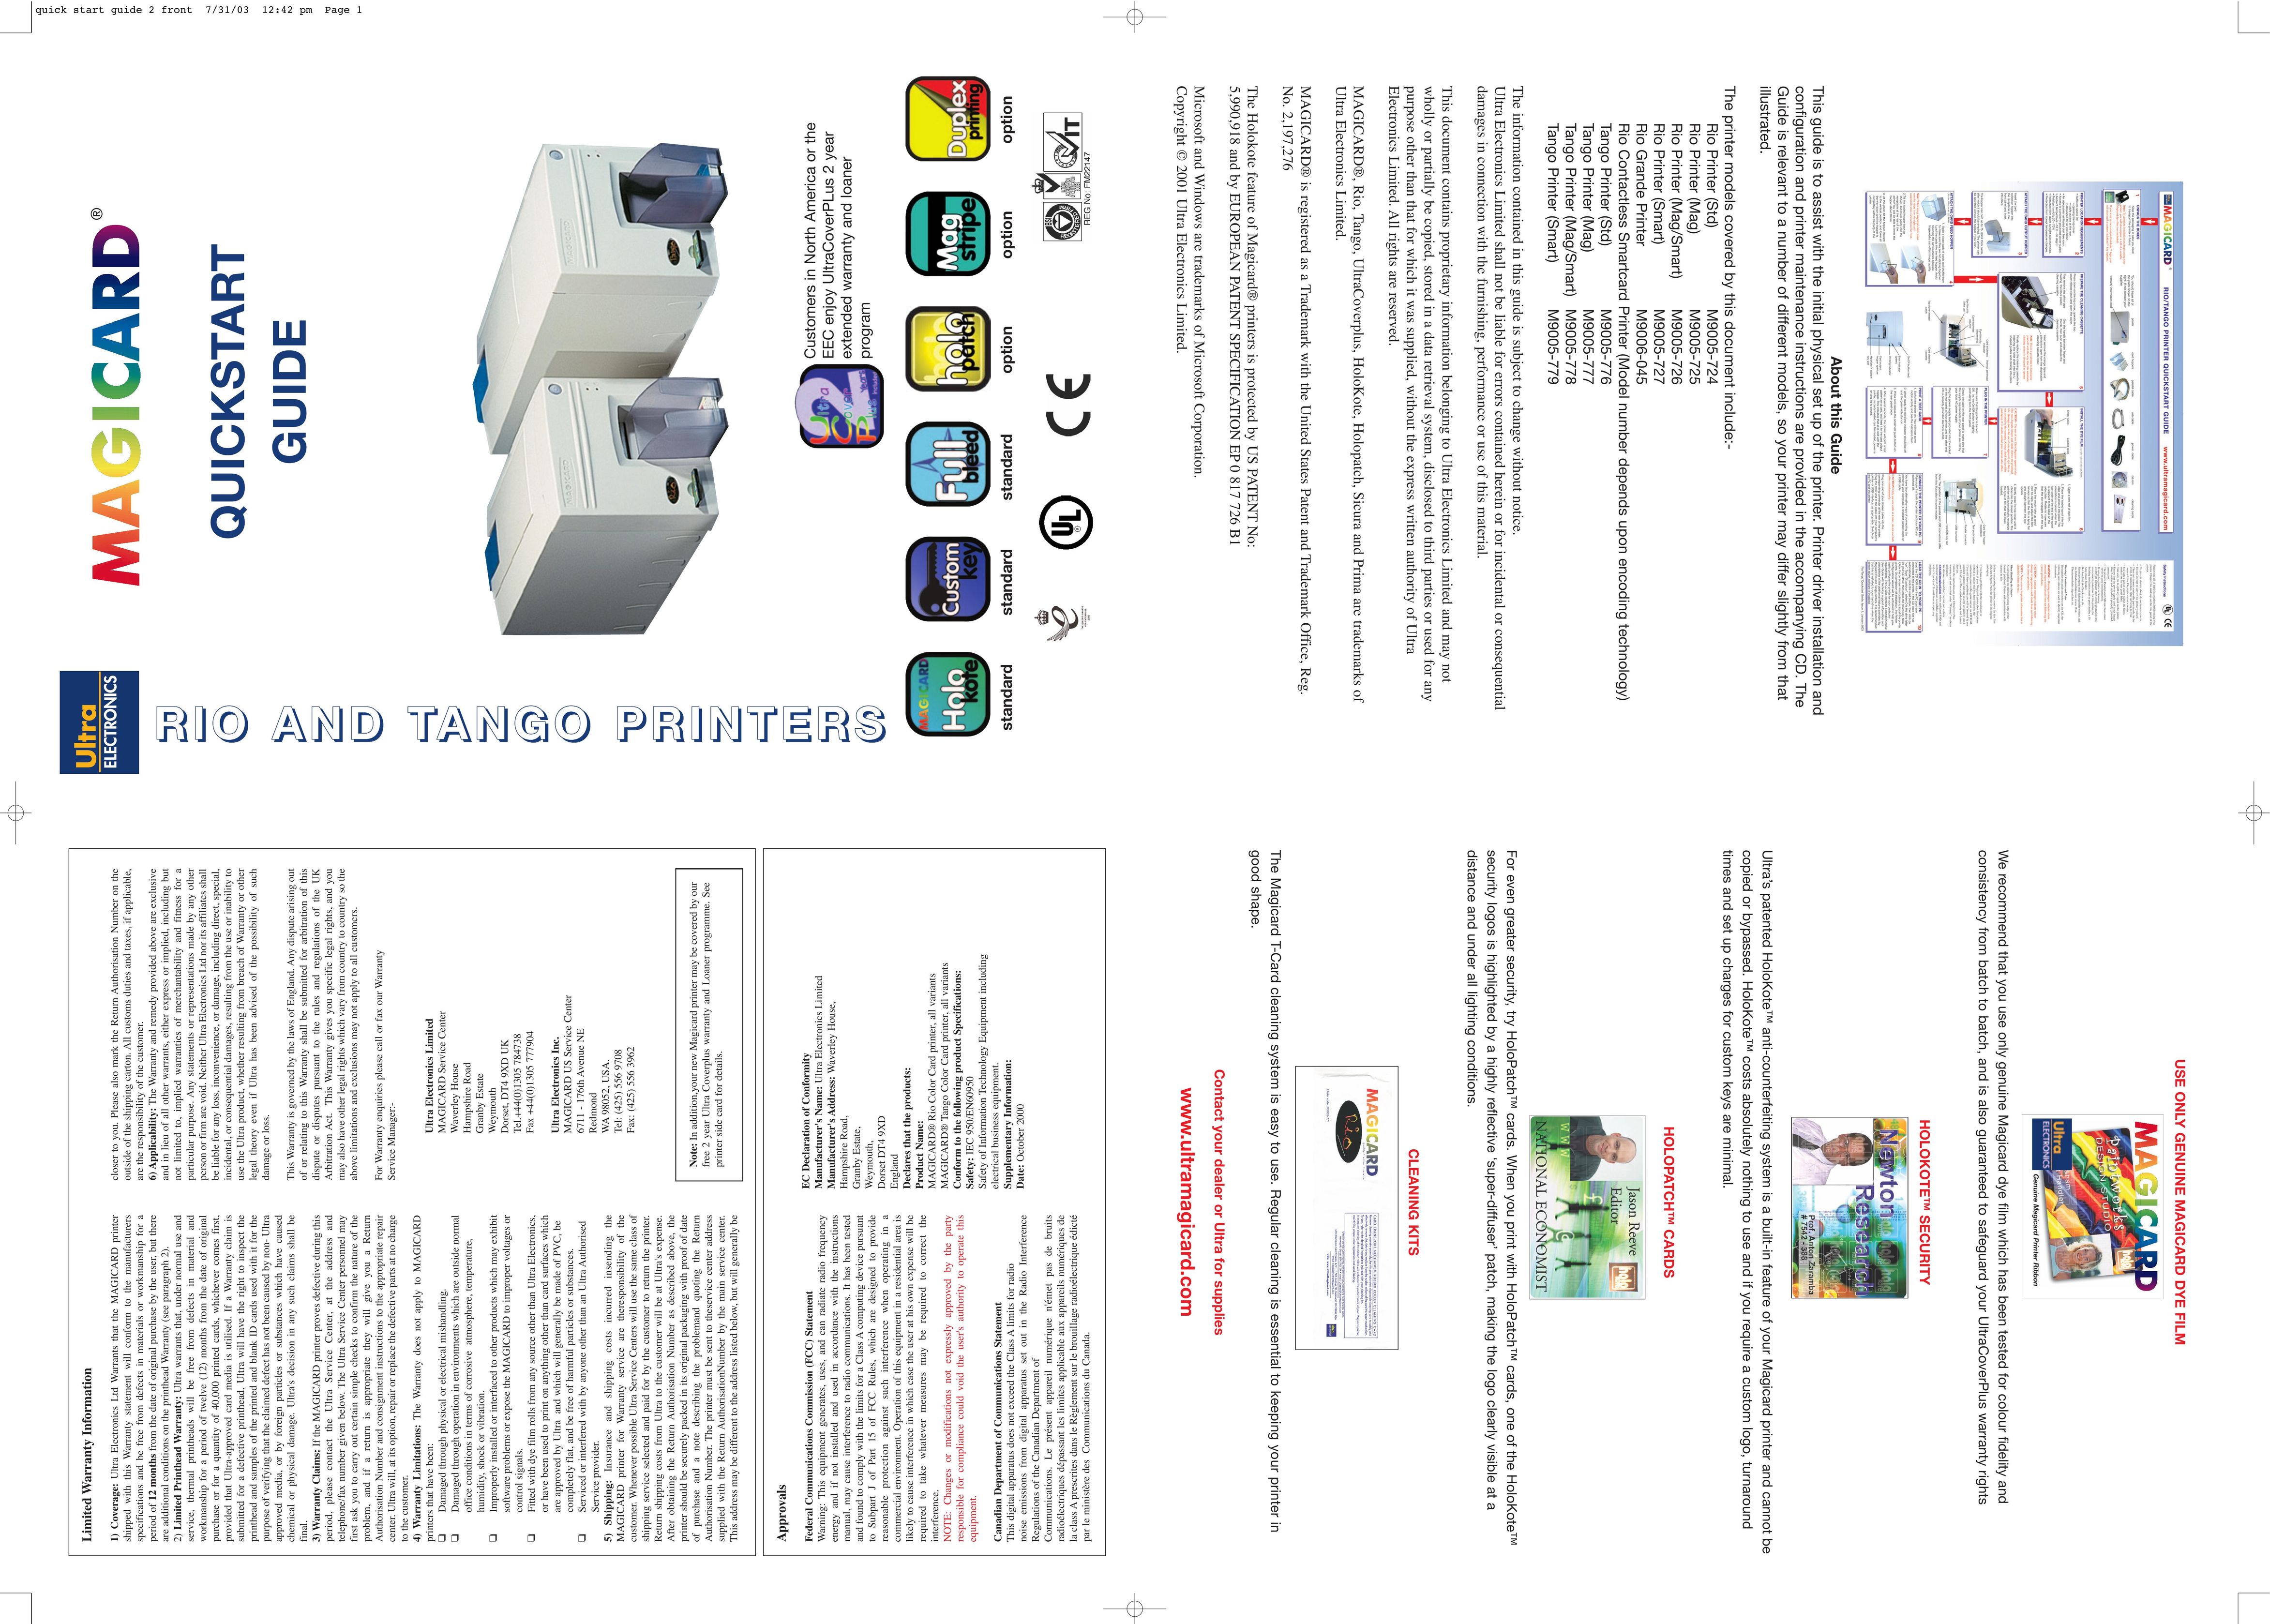 Ultra electronic M9006-045 Printer User Manual